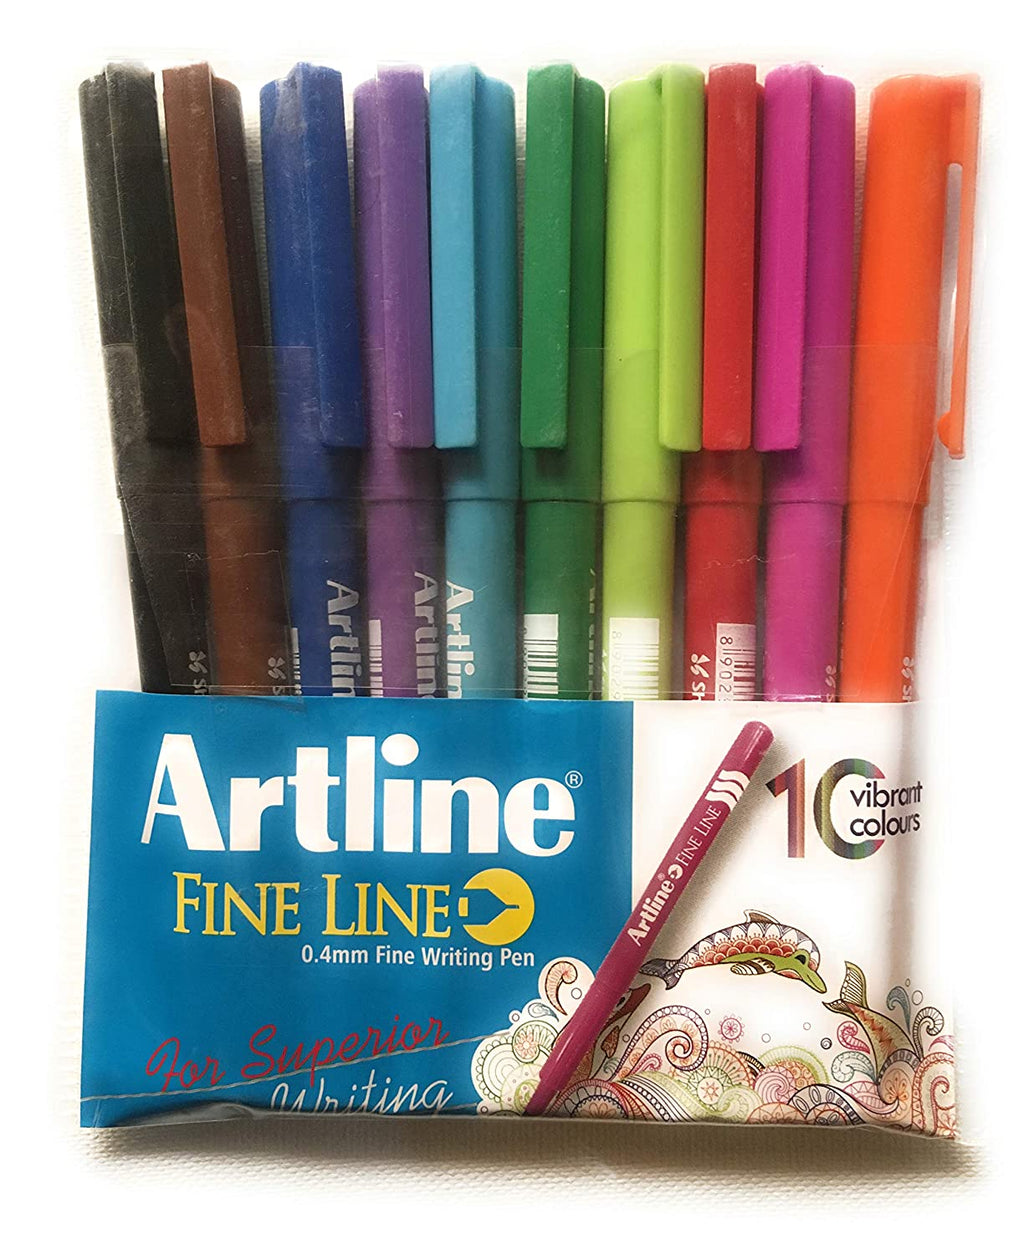 Detec™ आर्टलाइन फाइन लाइन 0.4 मिमी फाइन लाइन राइटिंग पेन (3 का पैक)